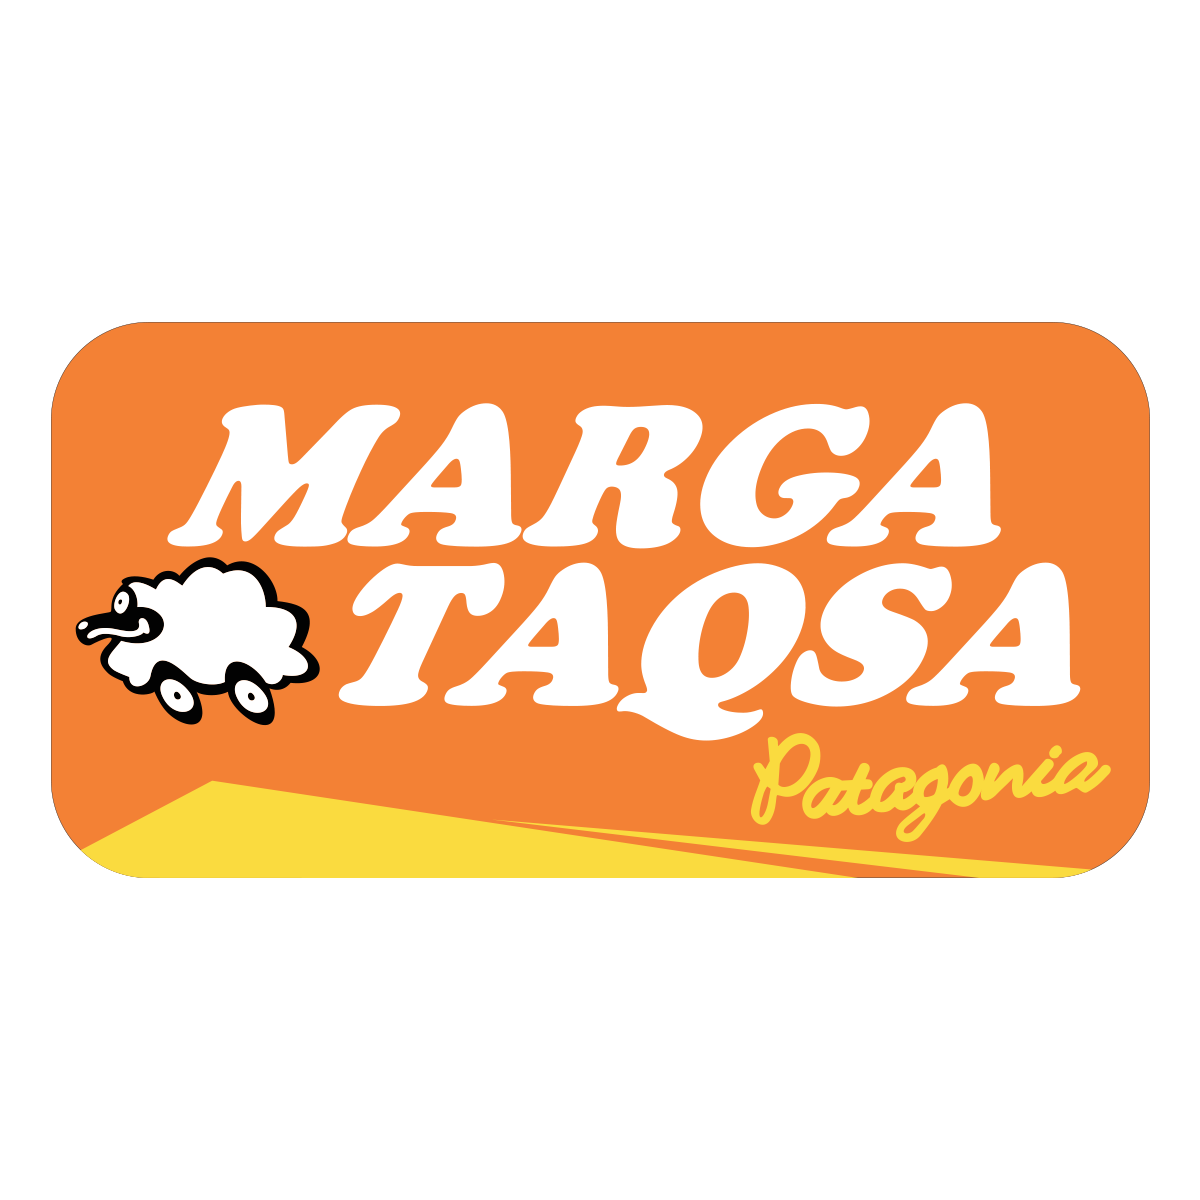 Marga Taqsa